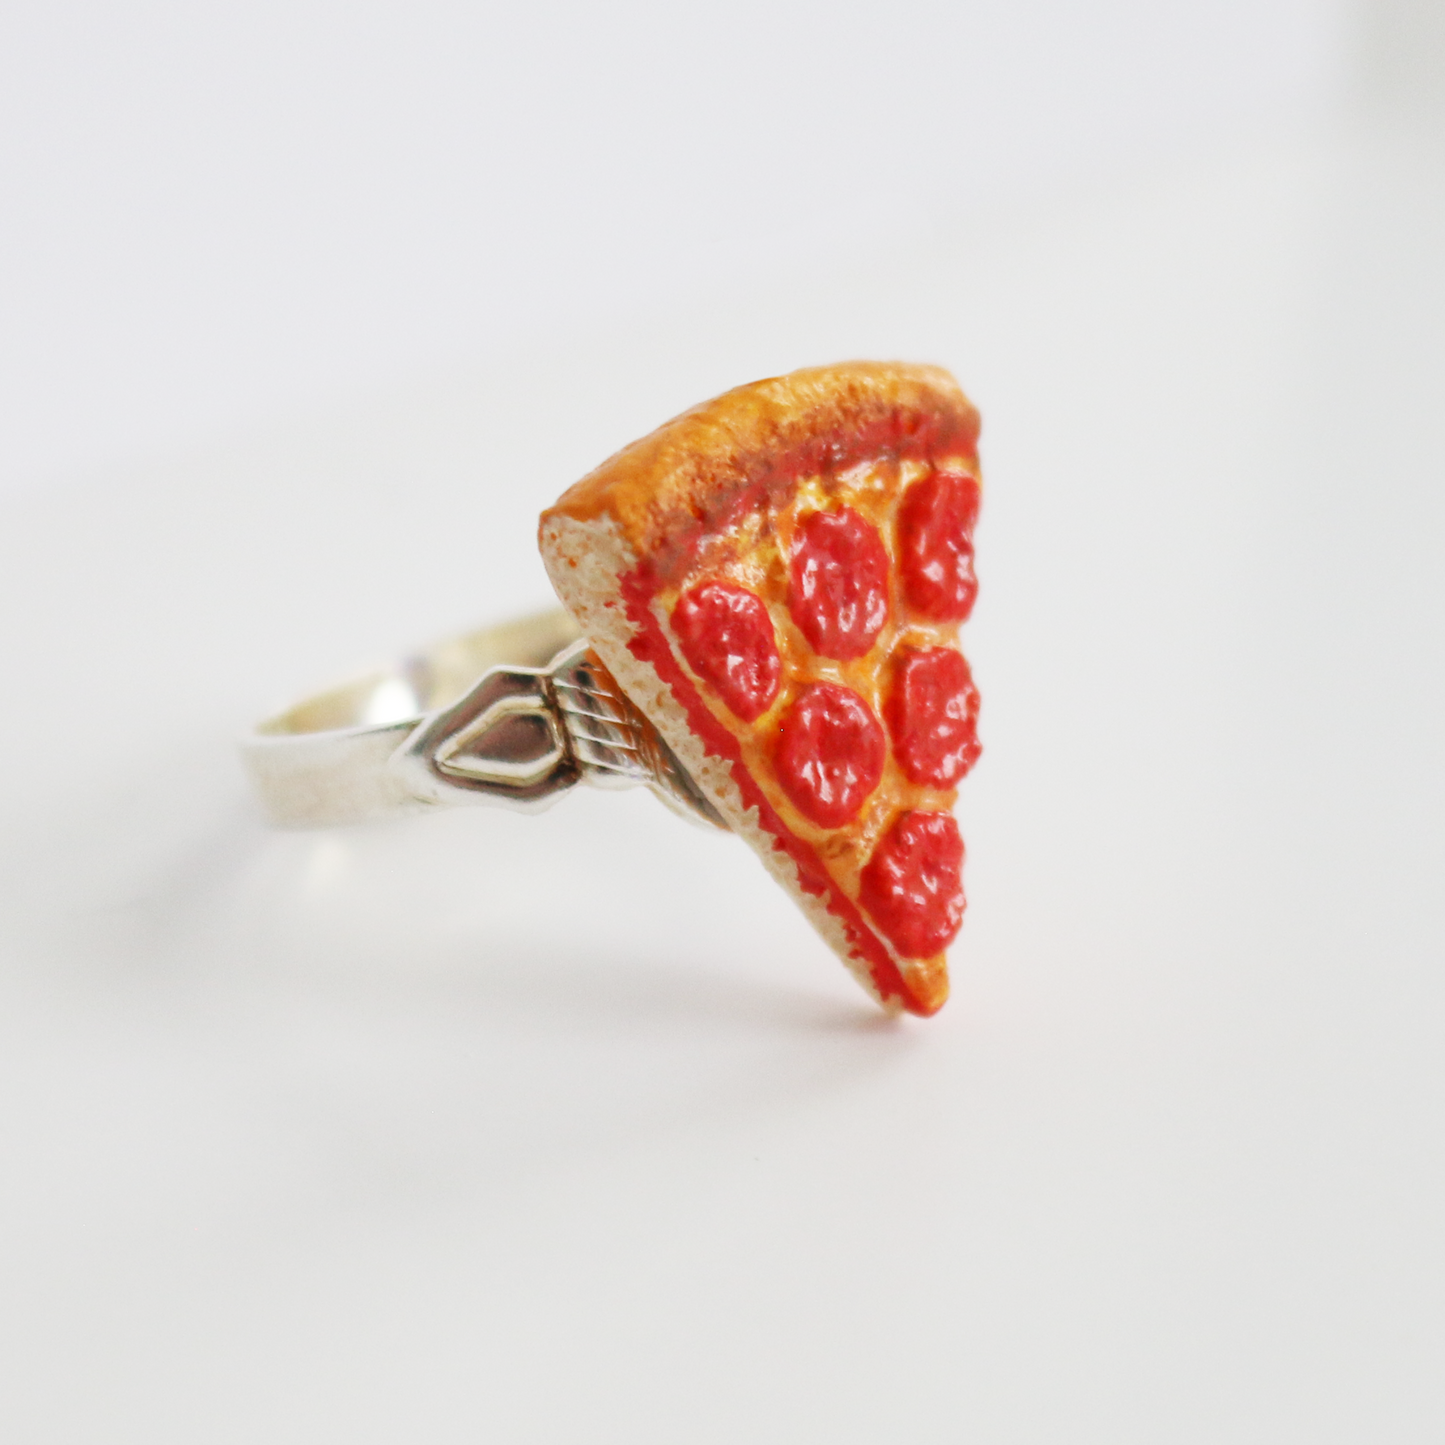 Pepperoni Pizza Slice Ring | Miniature Food Jewelry | Adjustable